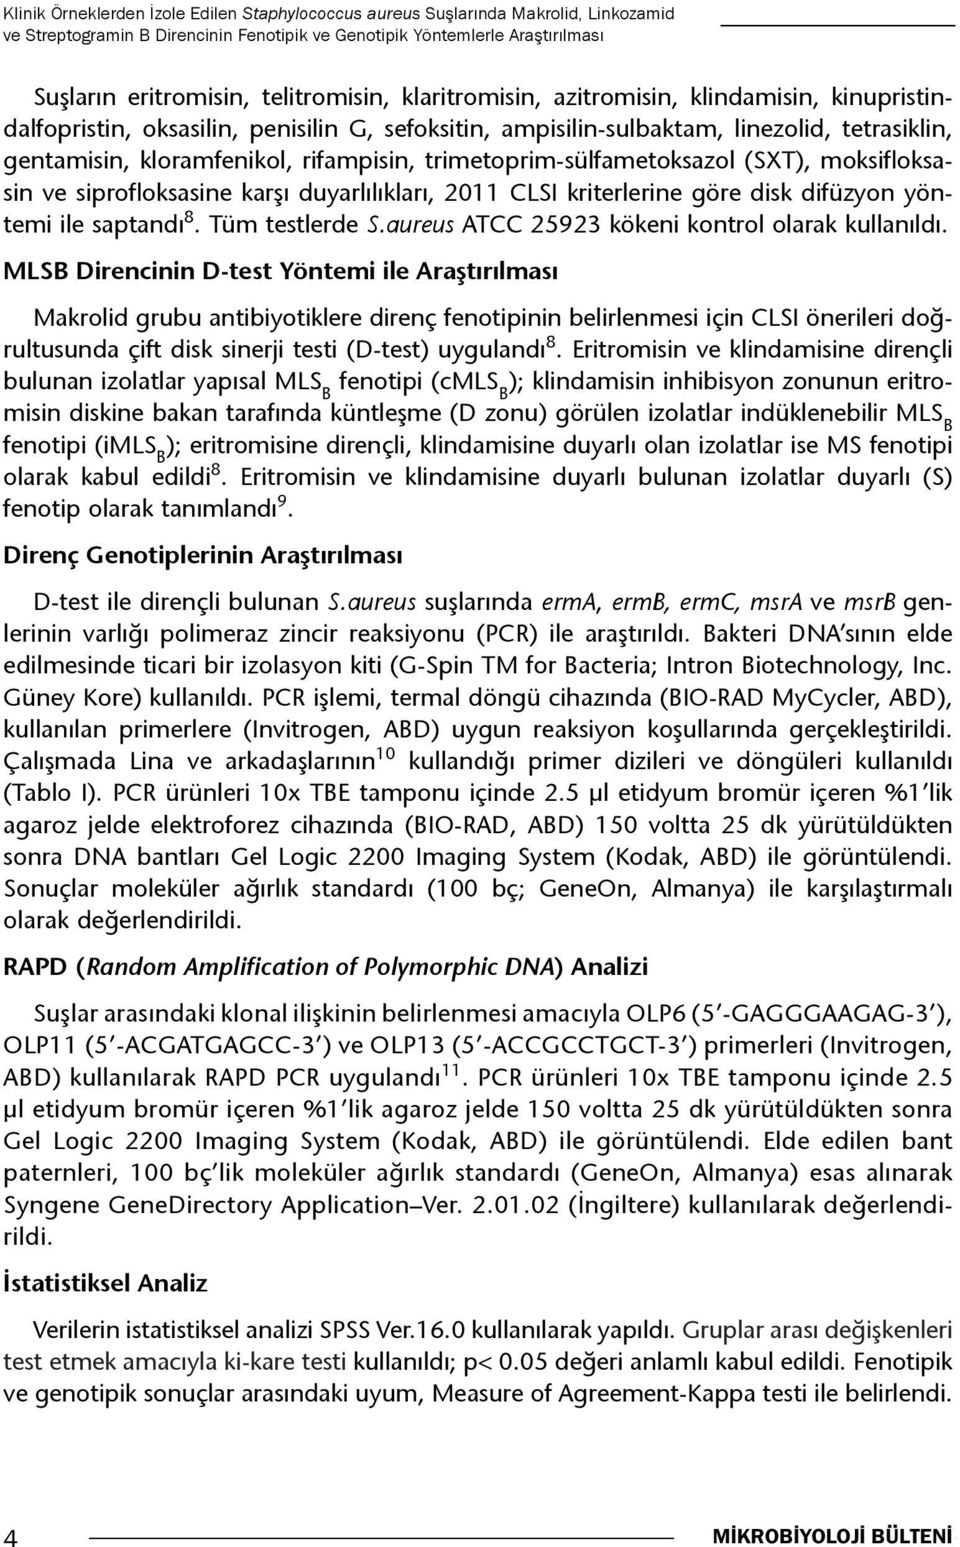 trimetoprim-sülfametoksazol (SXT), moksifloksasin ve siprofloksasine karşı duyarlılıkları, 2011 CLSI kriterlerine göre disk difüzyon yöntemi ile saptandı 8. Tüm testlerde S.